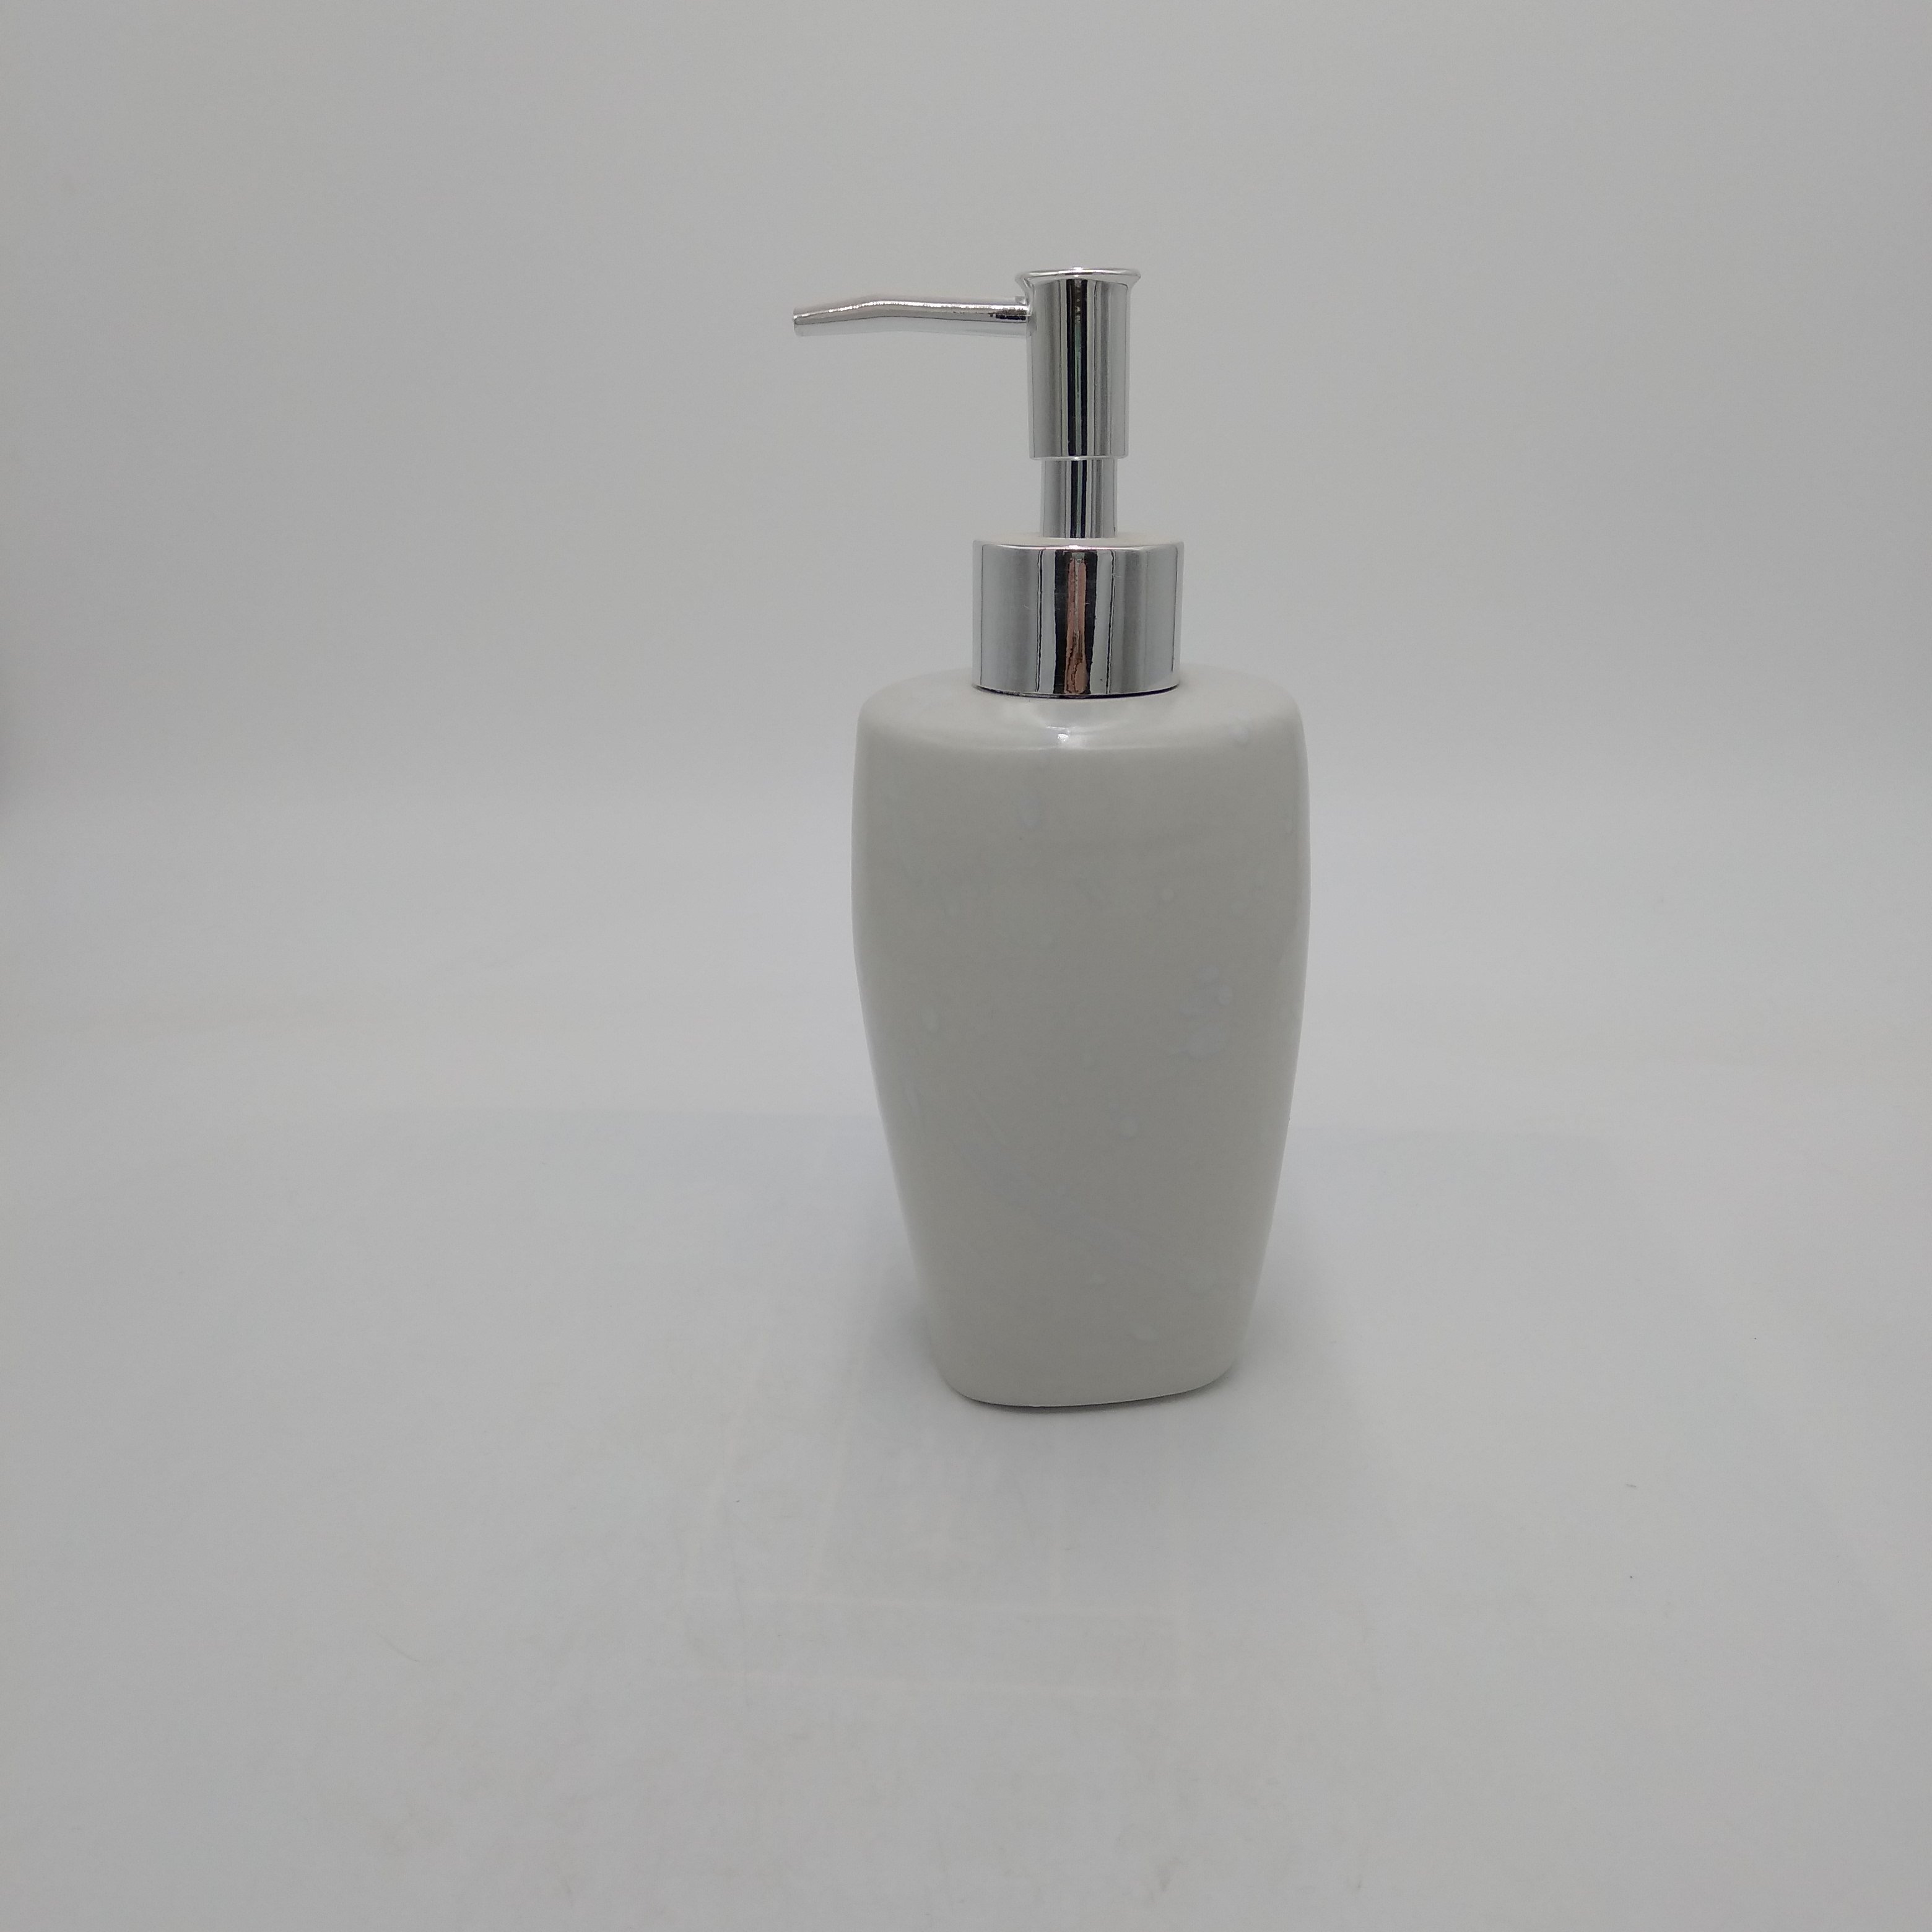 White Soap Dispenser for Bathroom Kitchen Countertop Lotion & Liquid Dispenser Soap Bottle Ceramic